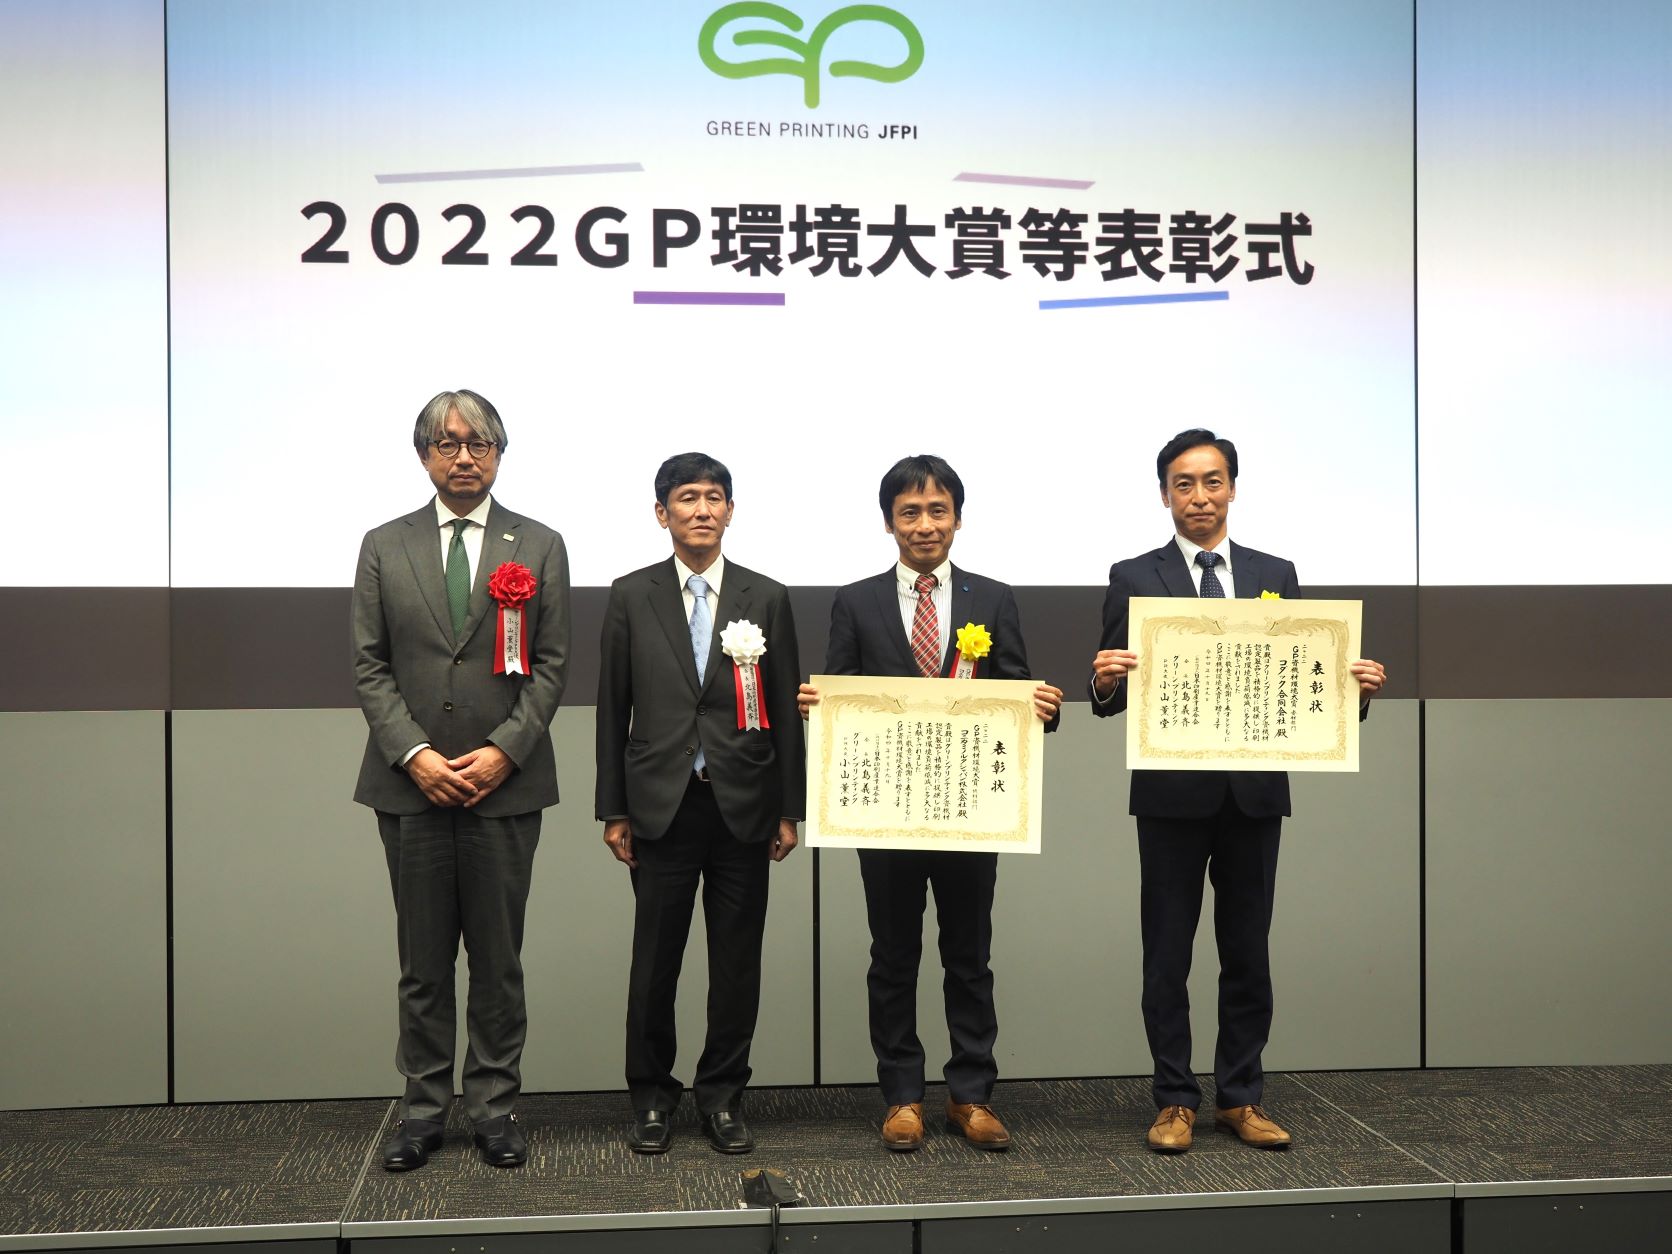 「GP資機材環境大賞」受賞企業の代表者の皆さん。